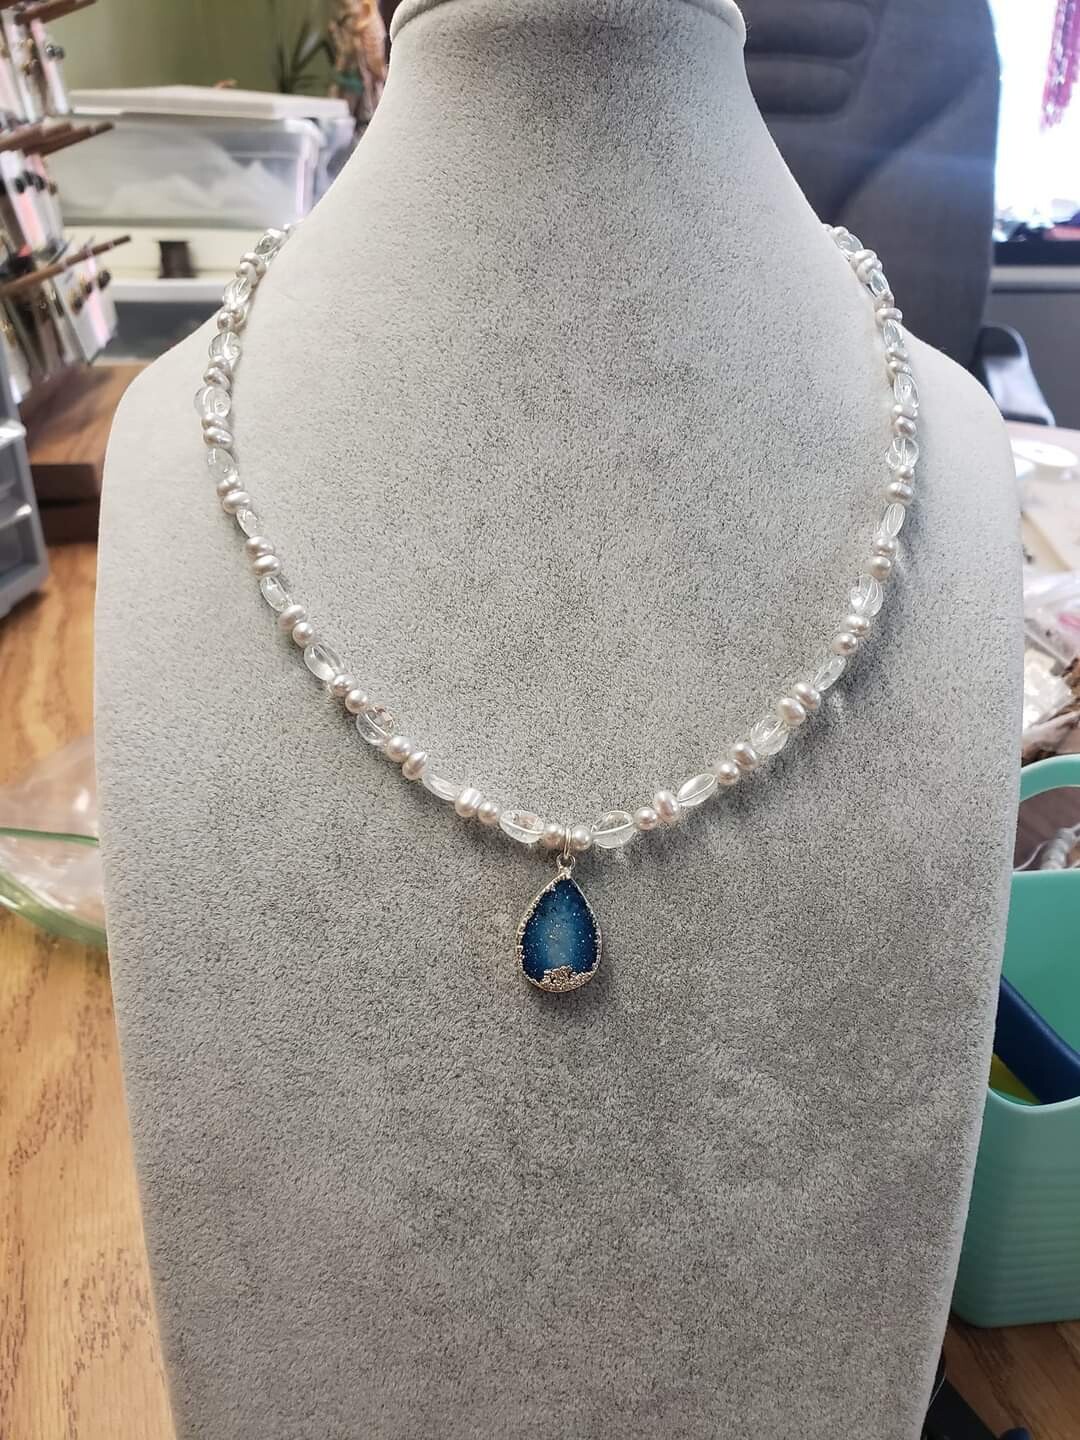 Aquamarine March necklace-Aquamarine, pearls and Druzy pendant 19.25"